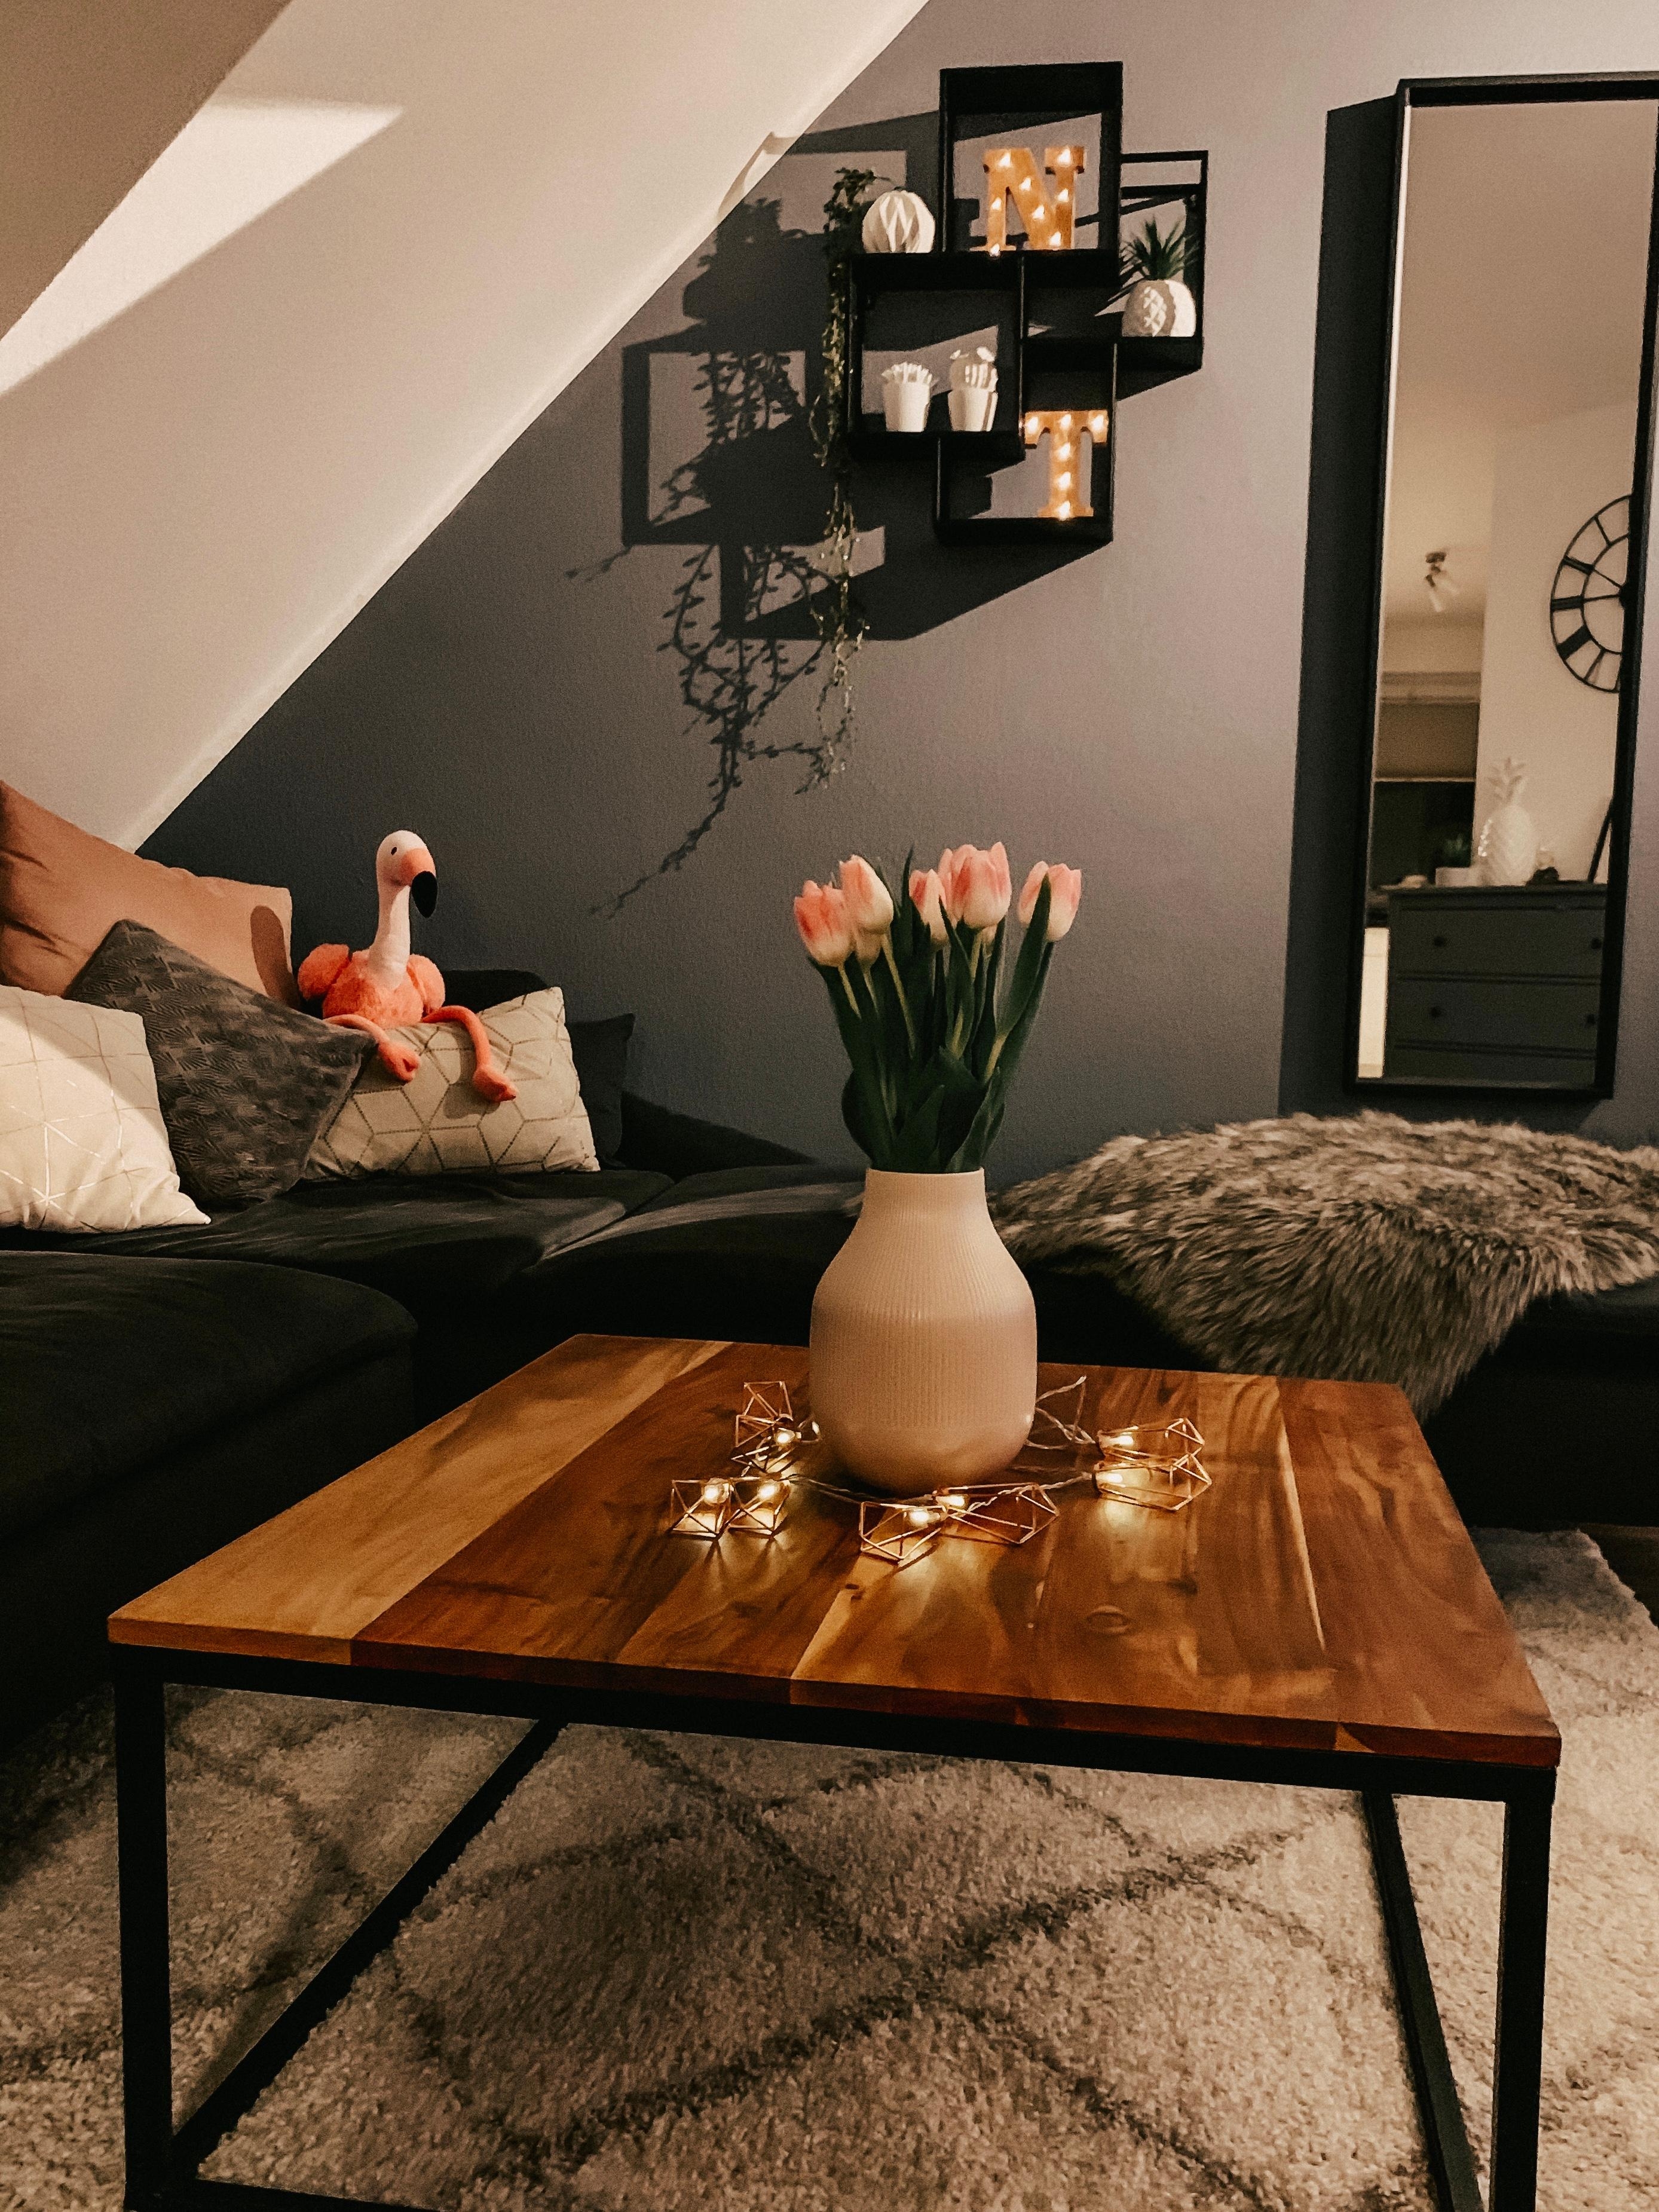 Tulpenliebe!🌷☺️ #couchliebt #wohnzimmer